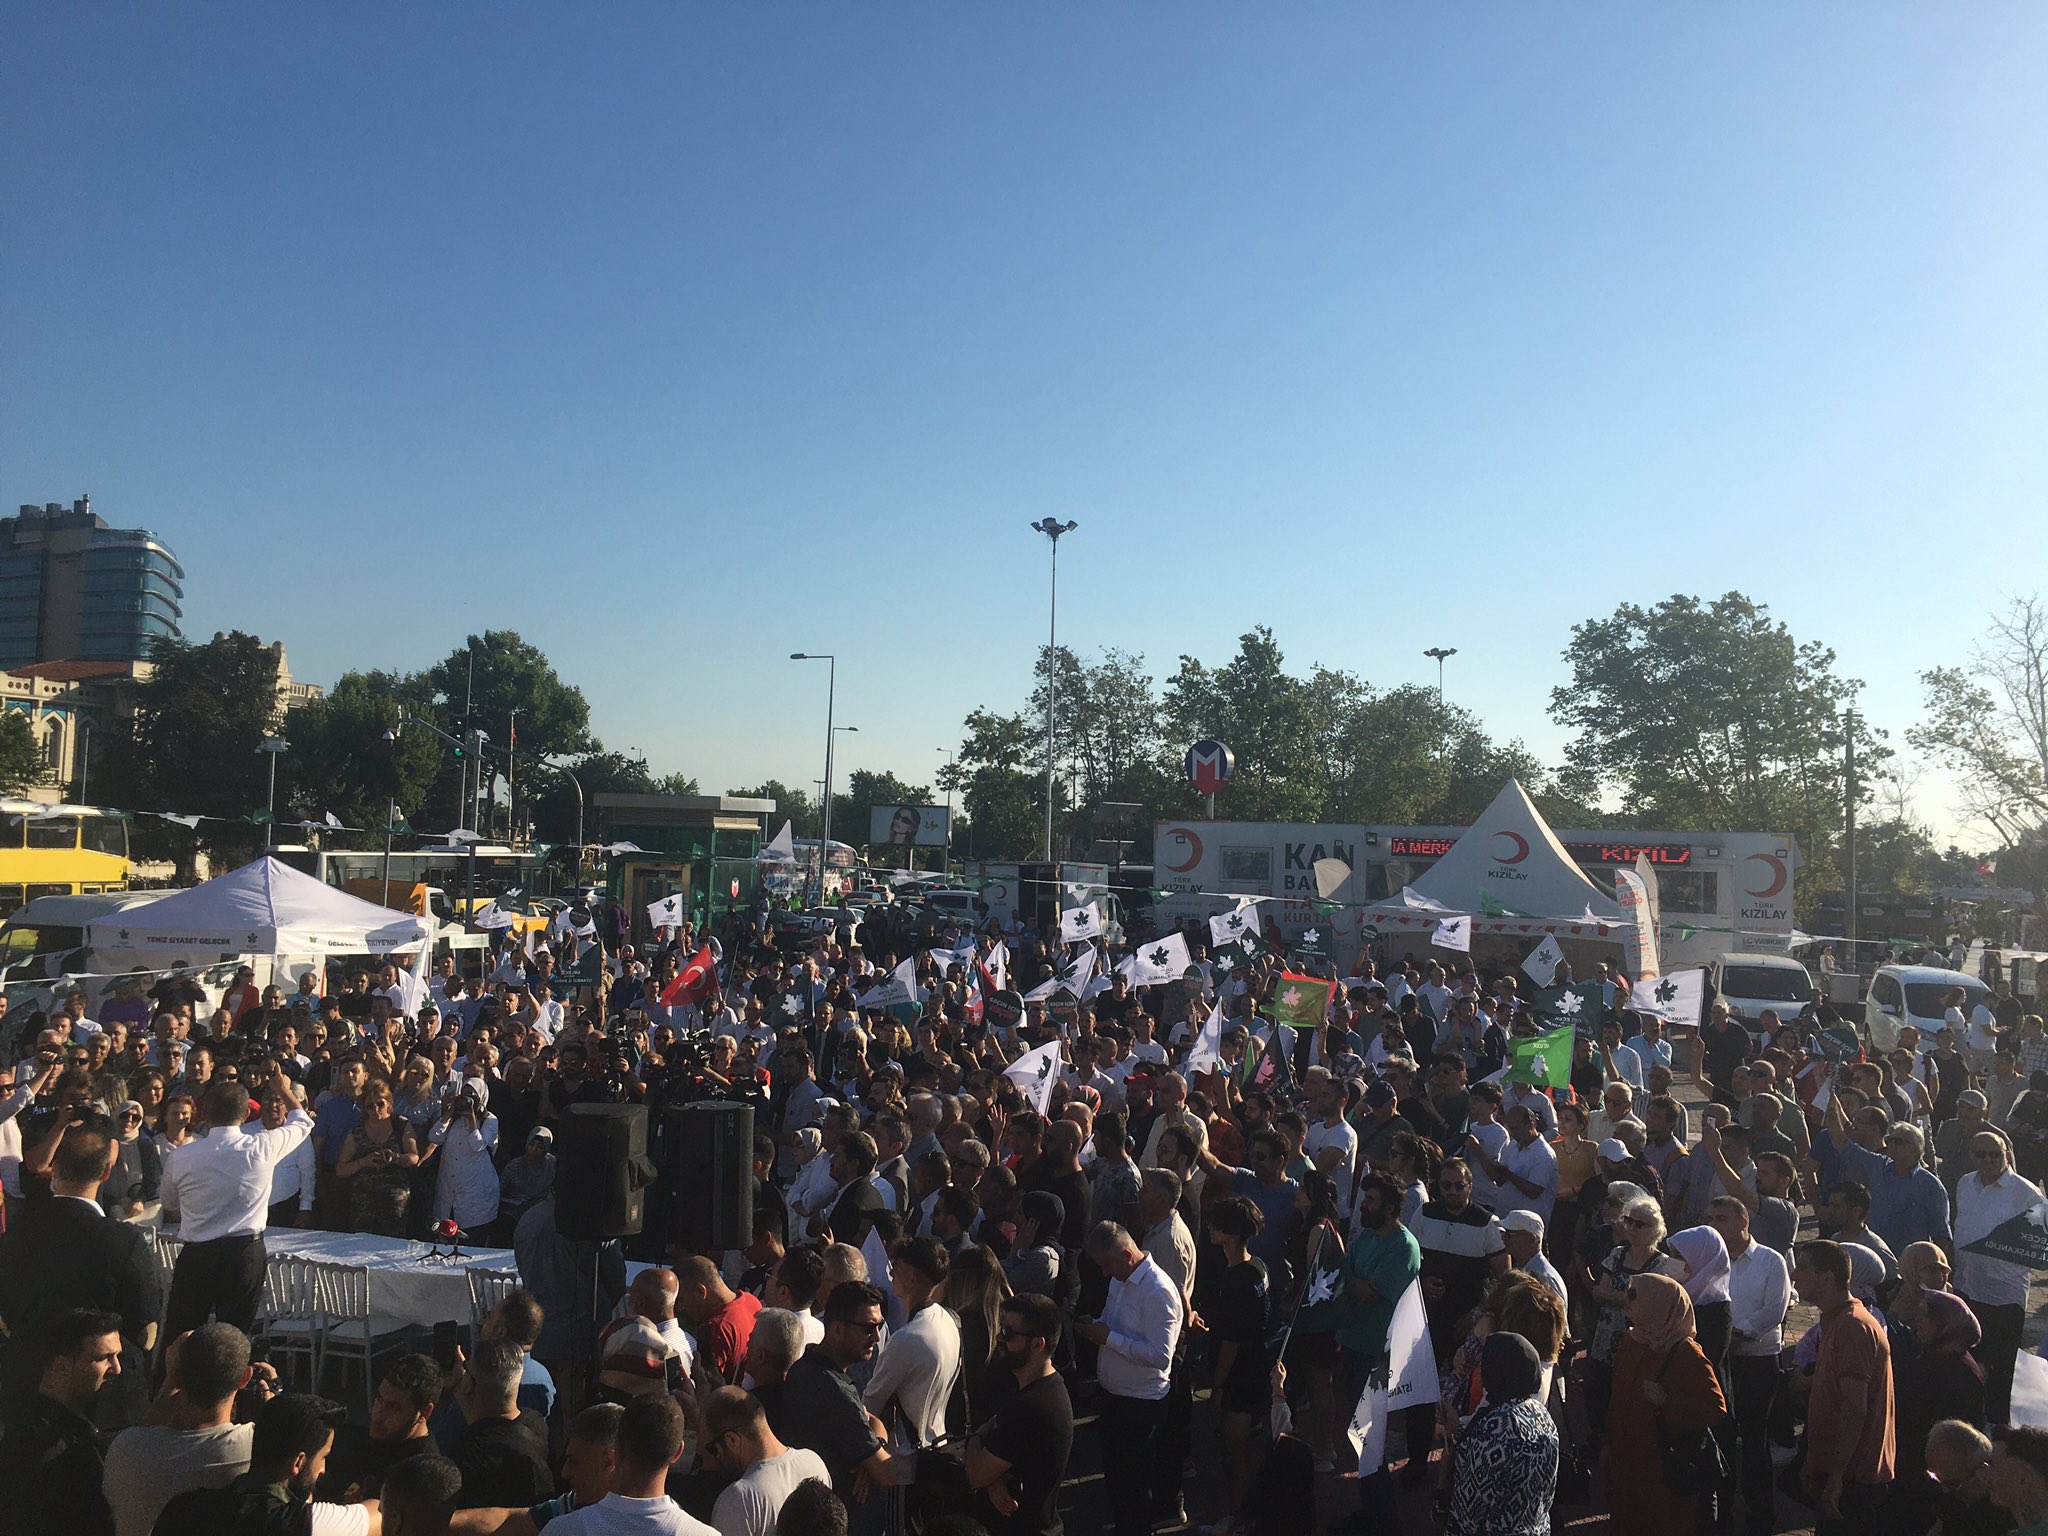 Genel Başkanımız Sayın Ahmet Davutoğlu’nun katılımlarıyla “Geçim İçin Seçim” sloganıyla düzenlediğimiz imza kampanyamız Kadıköy Meydanı’nda gerçekleştirildi.